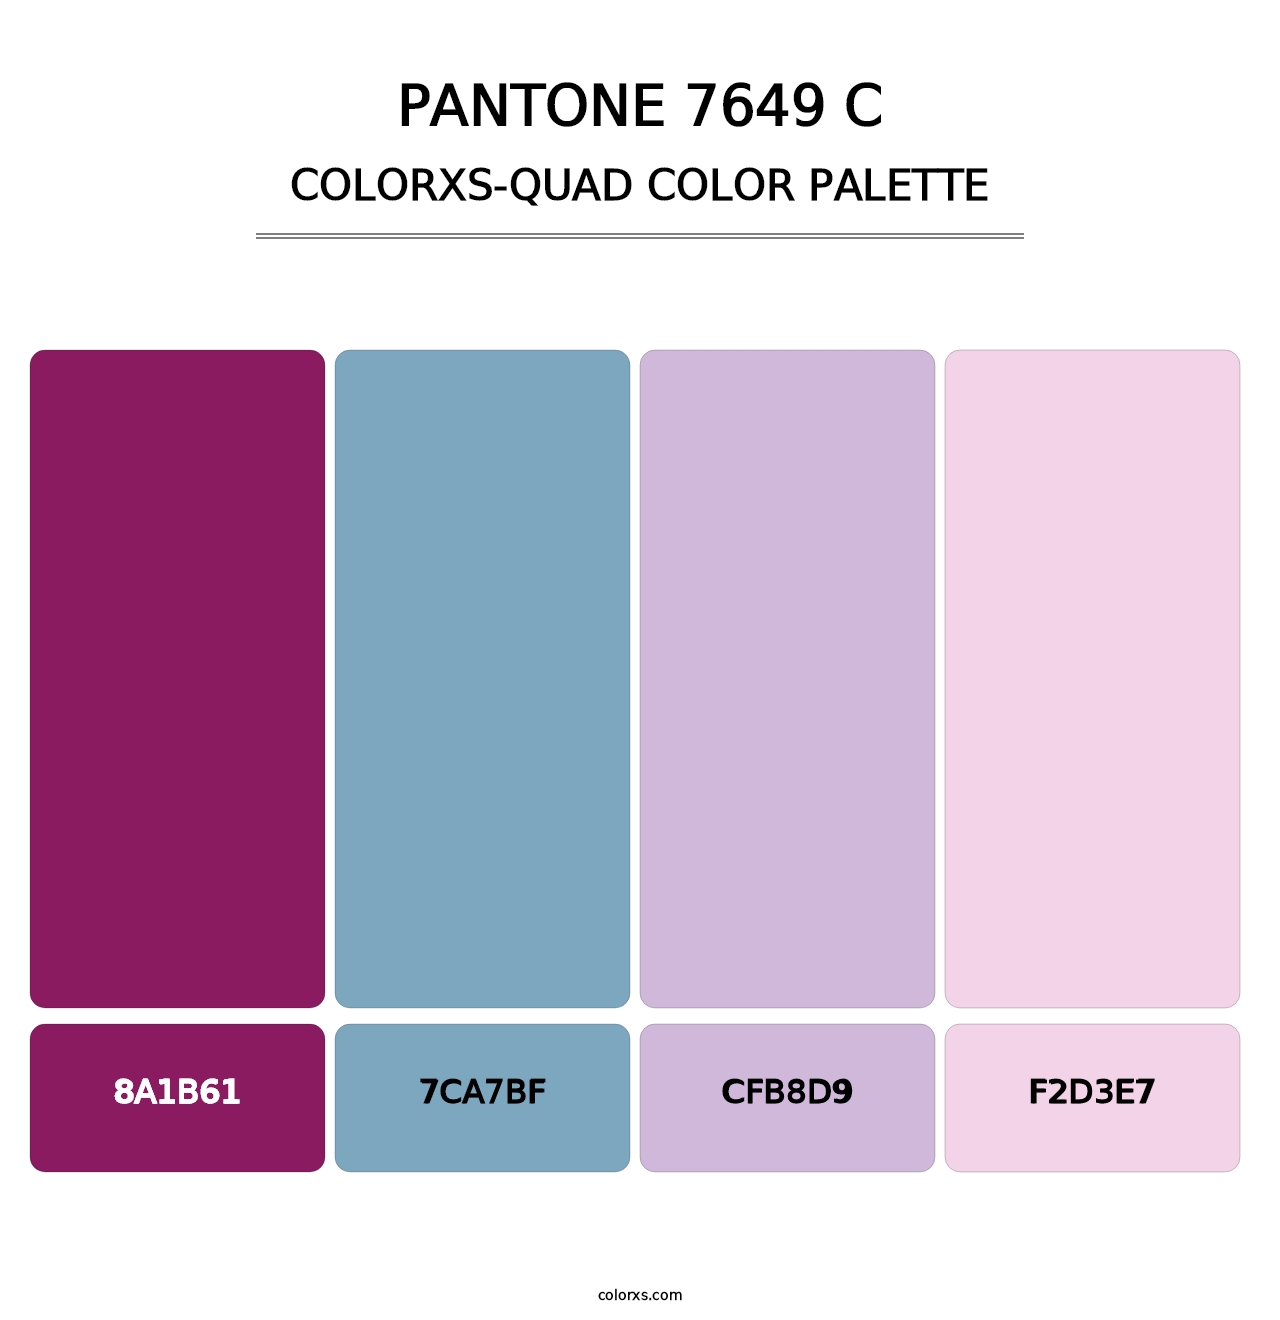 PANTONE 7649 C - Colorxs Quad Palette